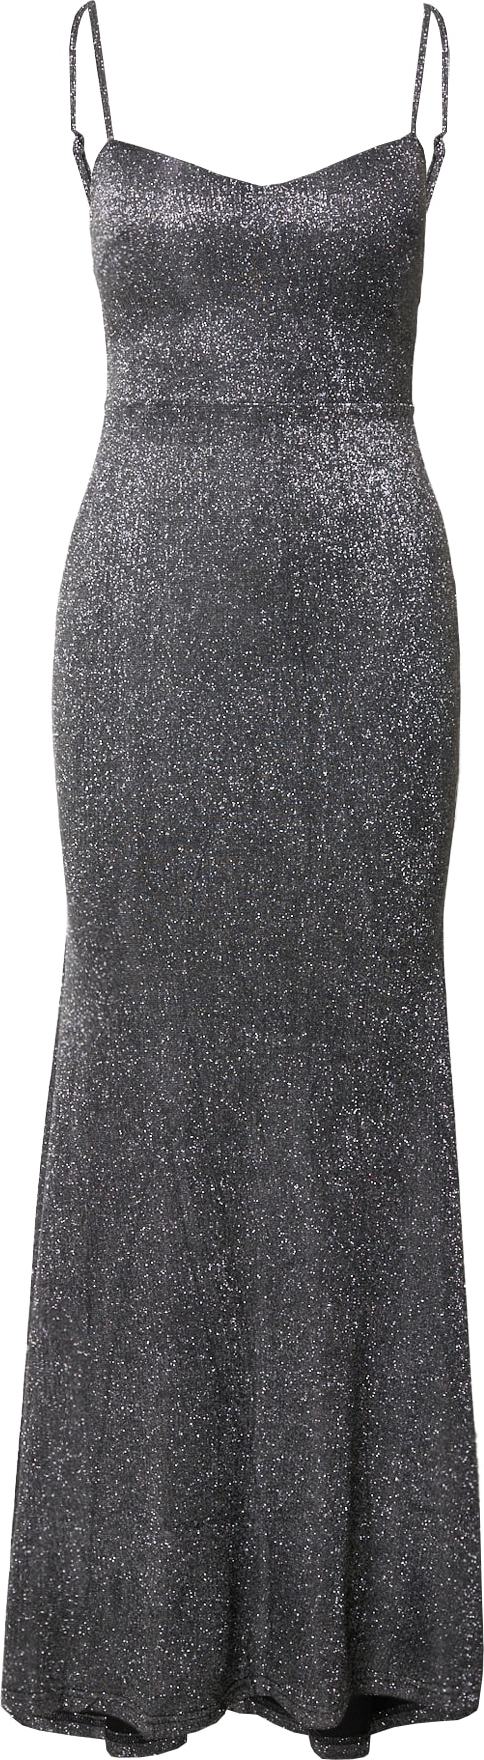 Mela London Společenské šaty 'Mela' stříbrně šedá / černá